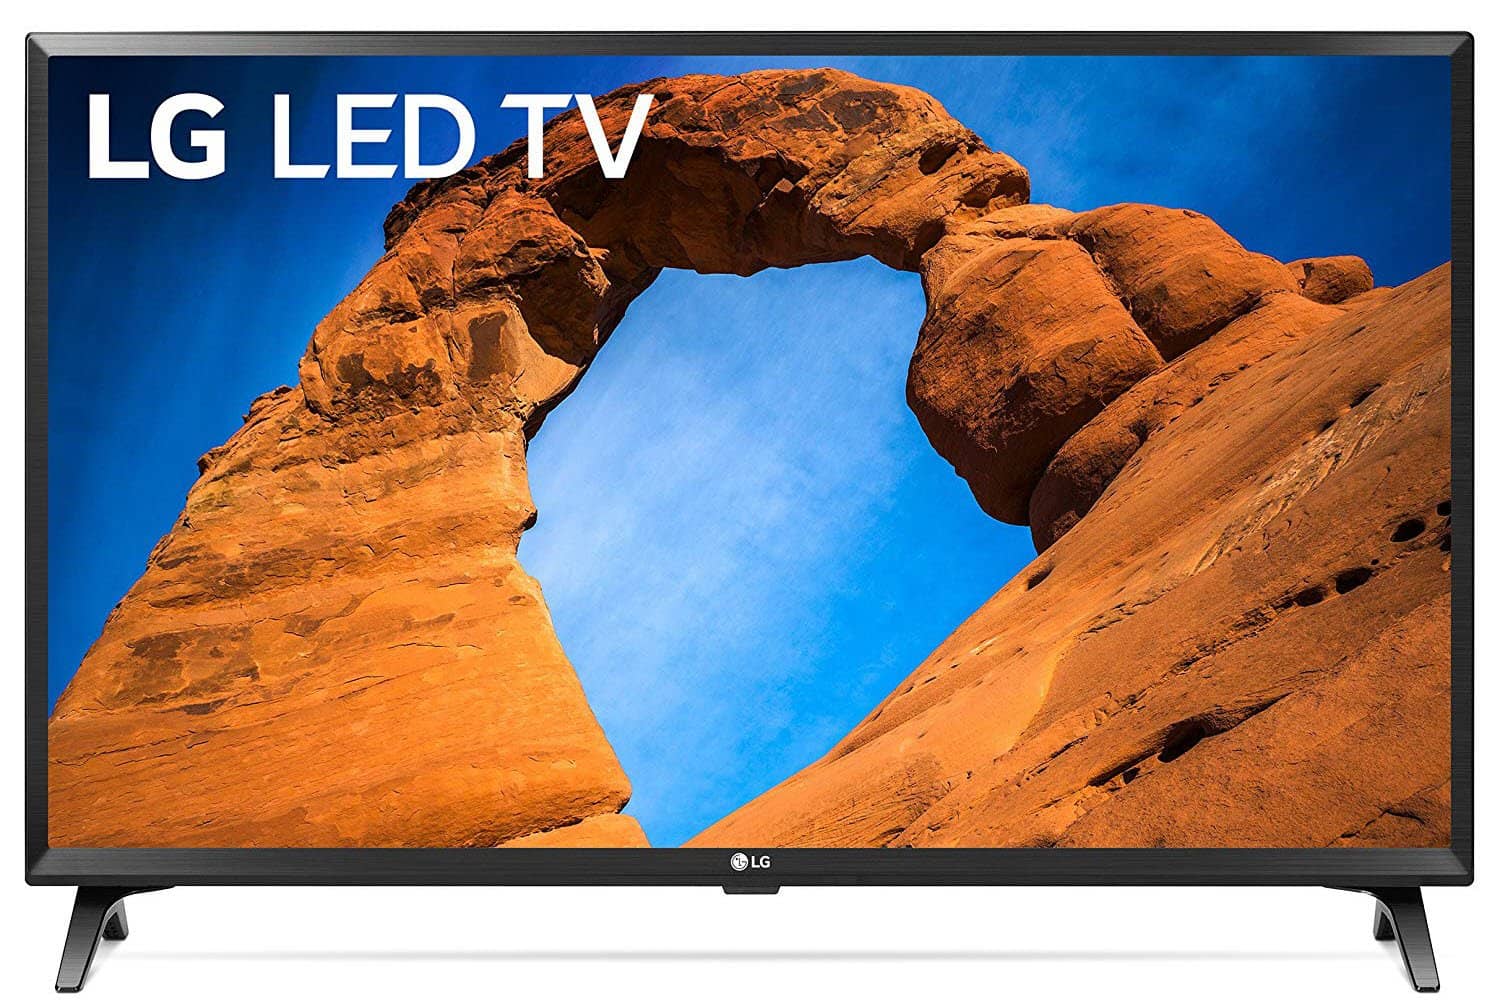 LG Electronics 32LK540BPUA 32-Inch 720p Smart LED TV (2018 Model)